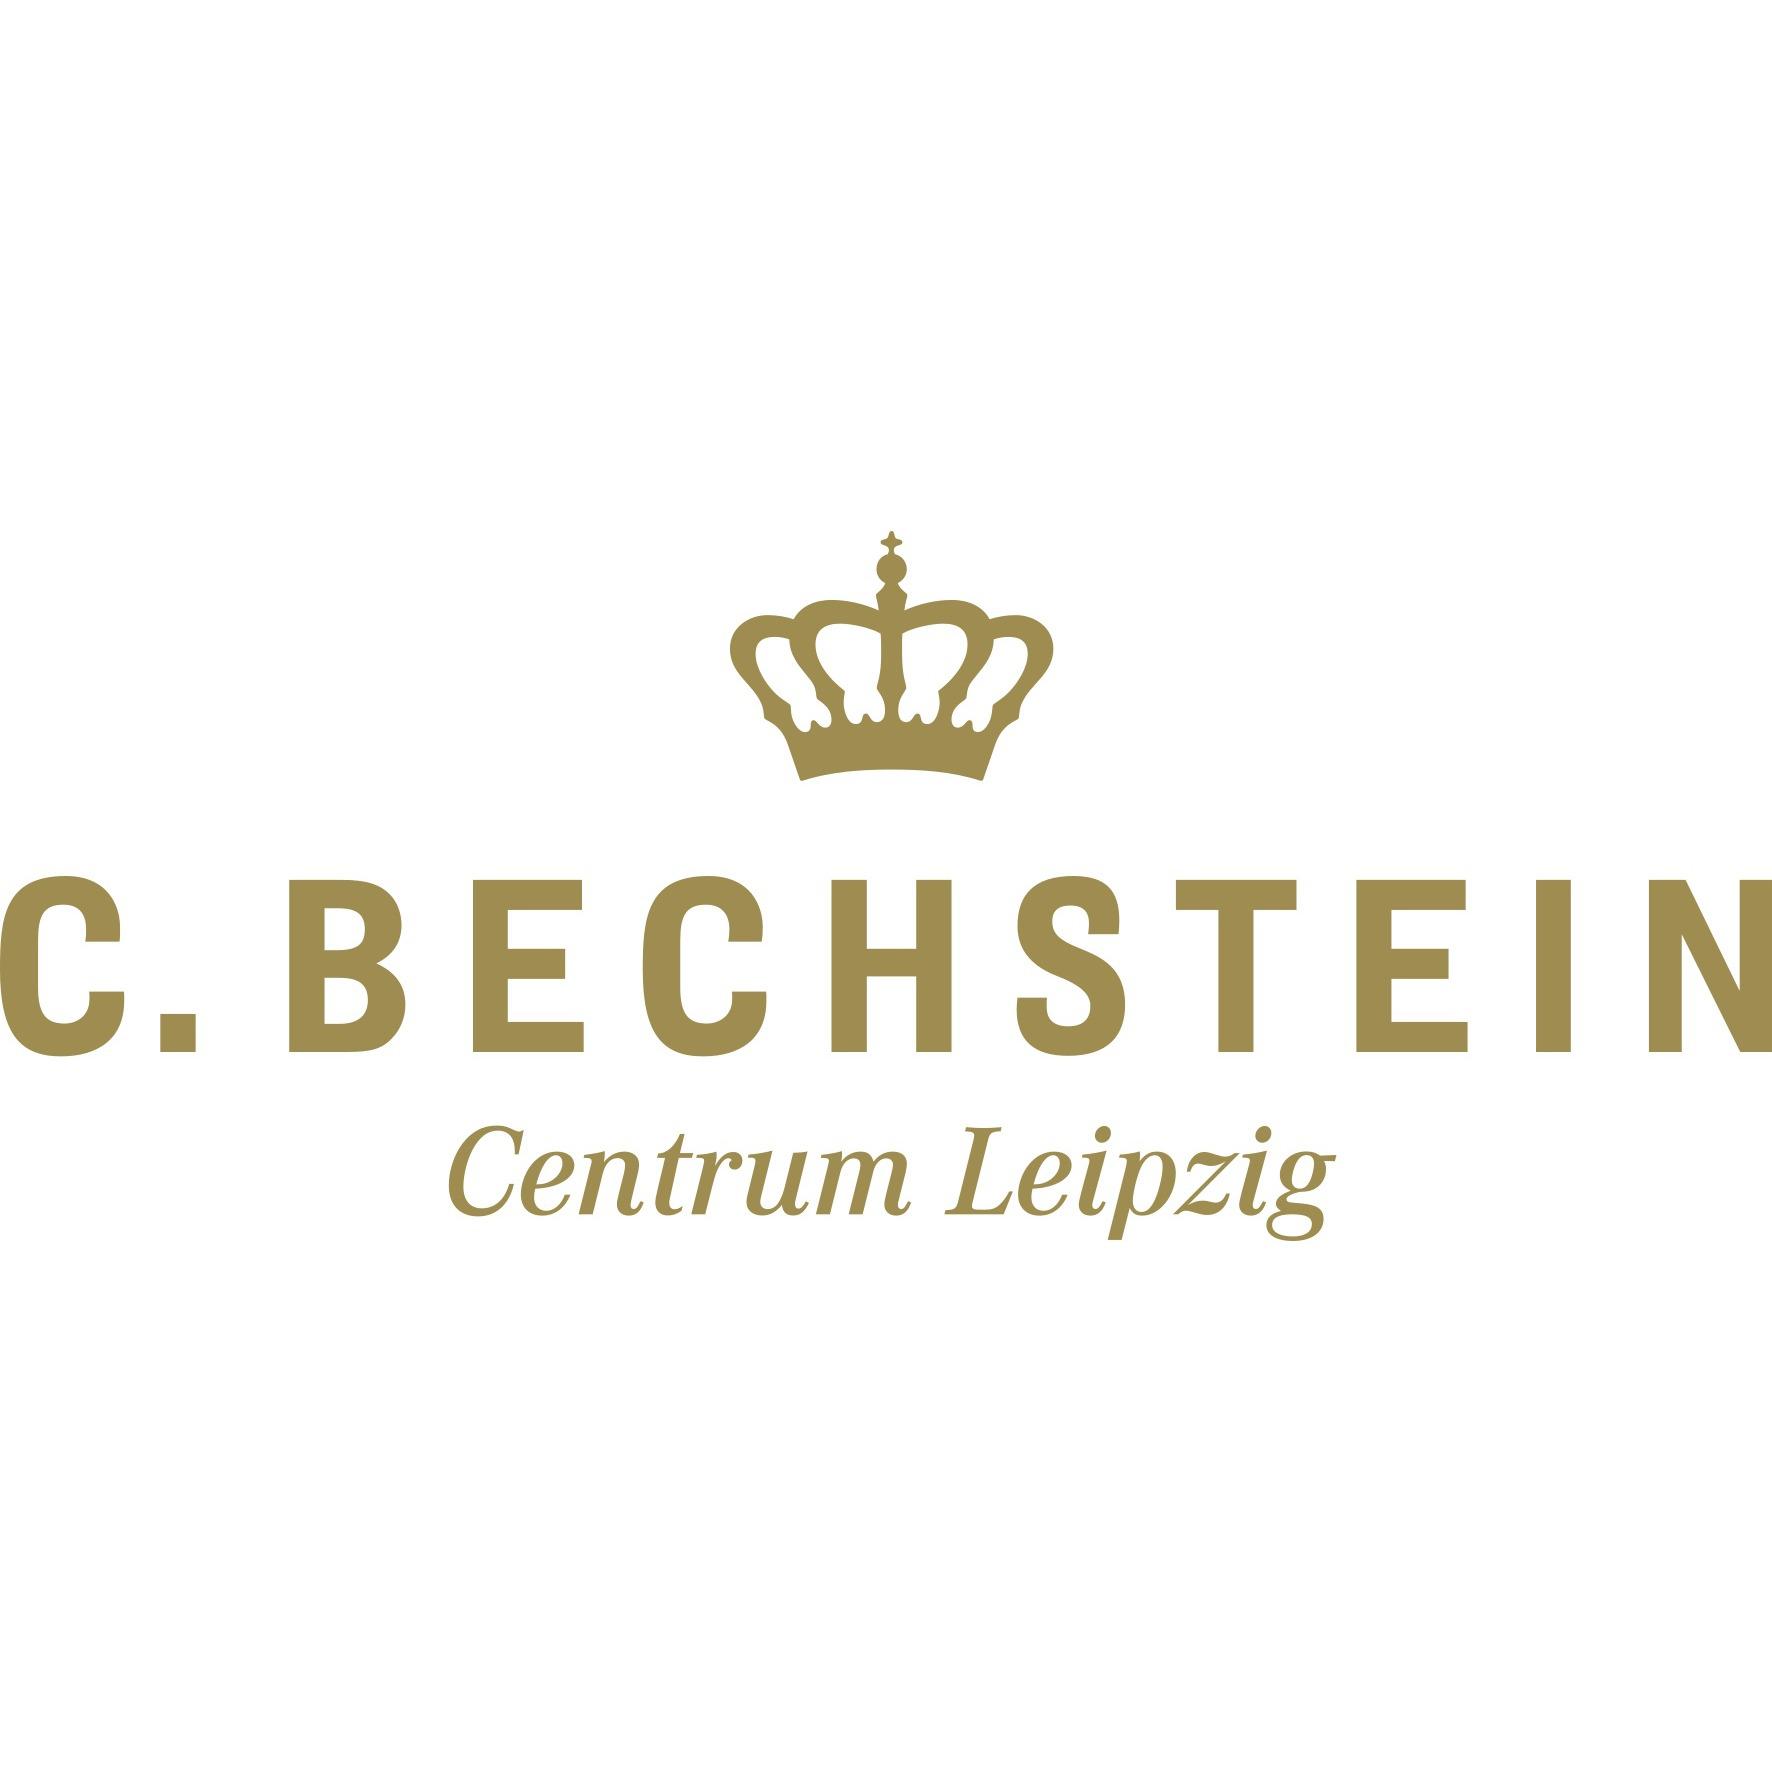 C. Bechstein Centrum Leipzig GmbH Logo